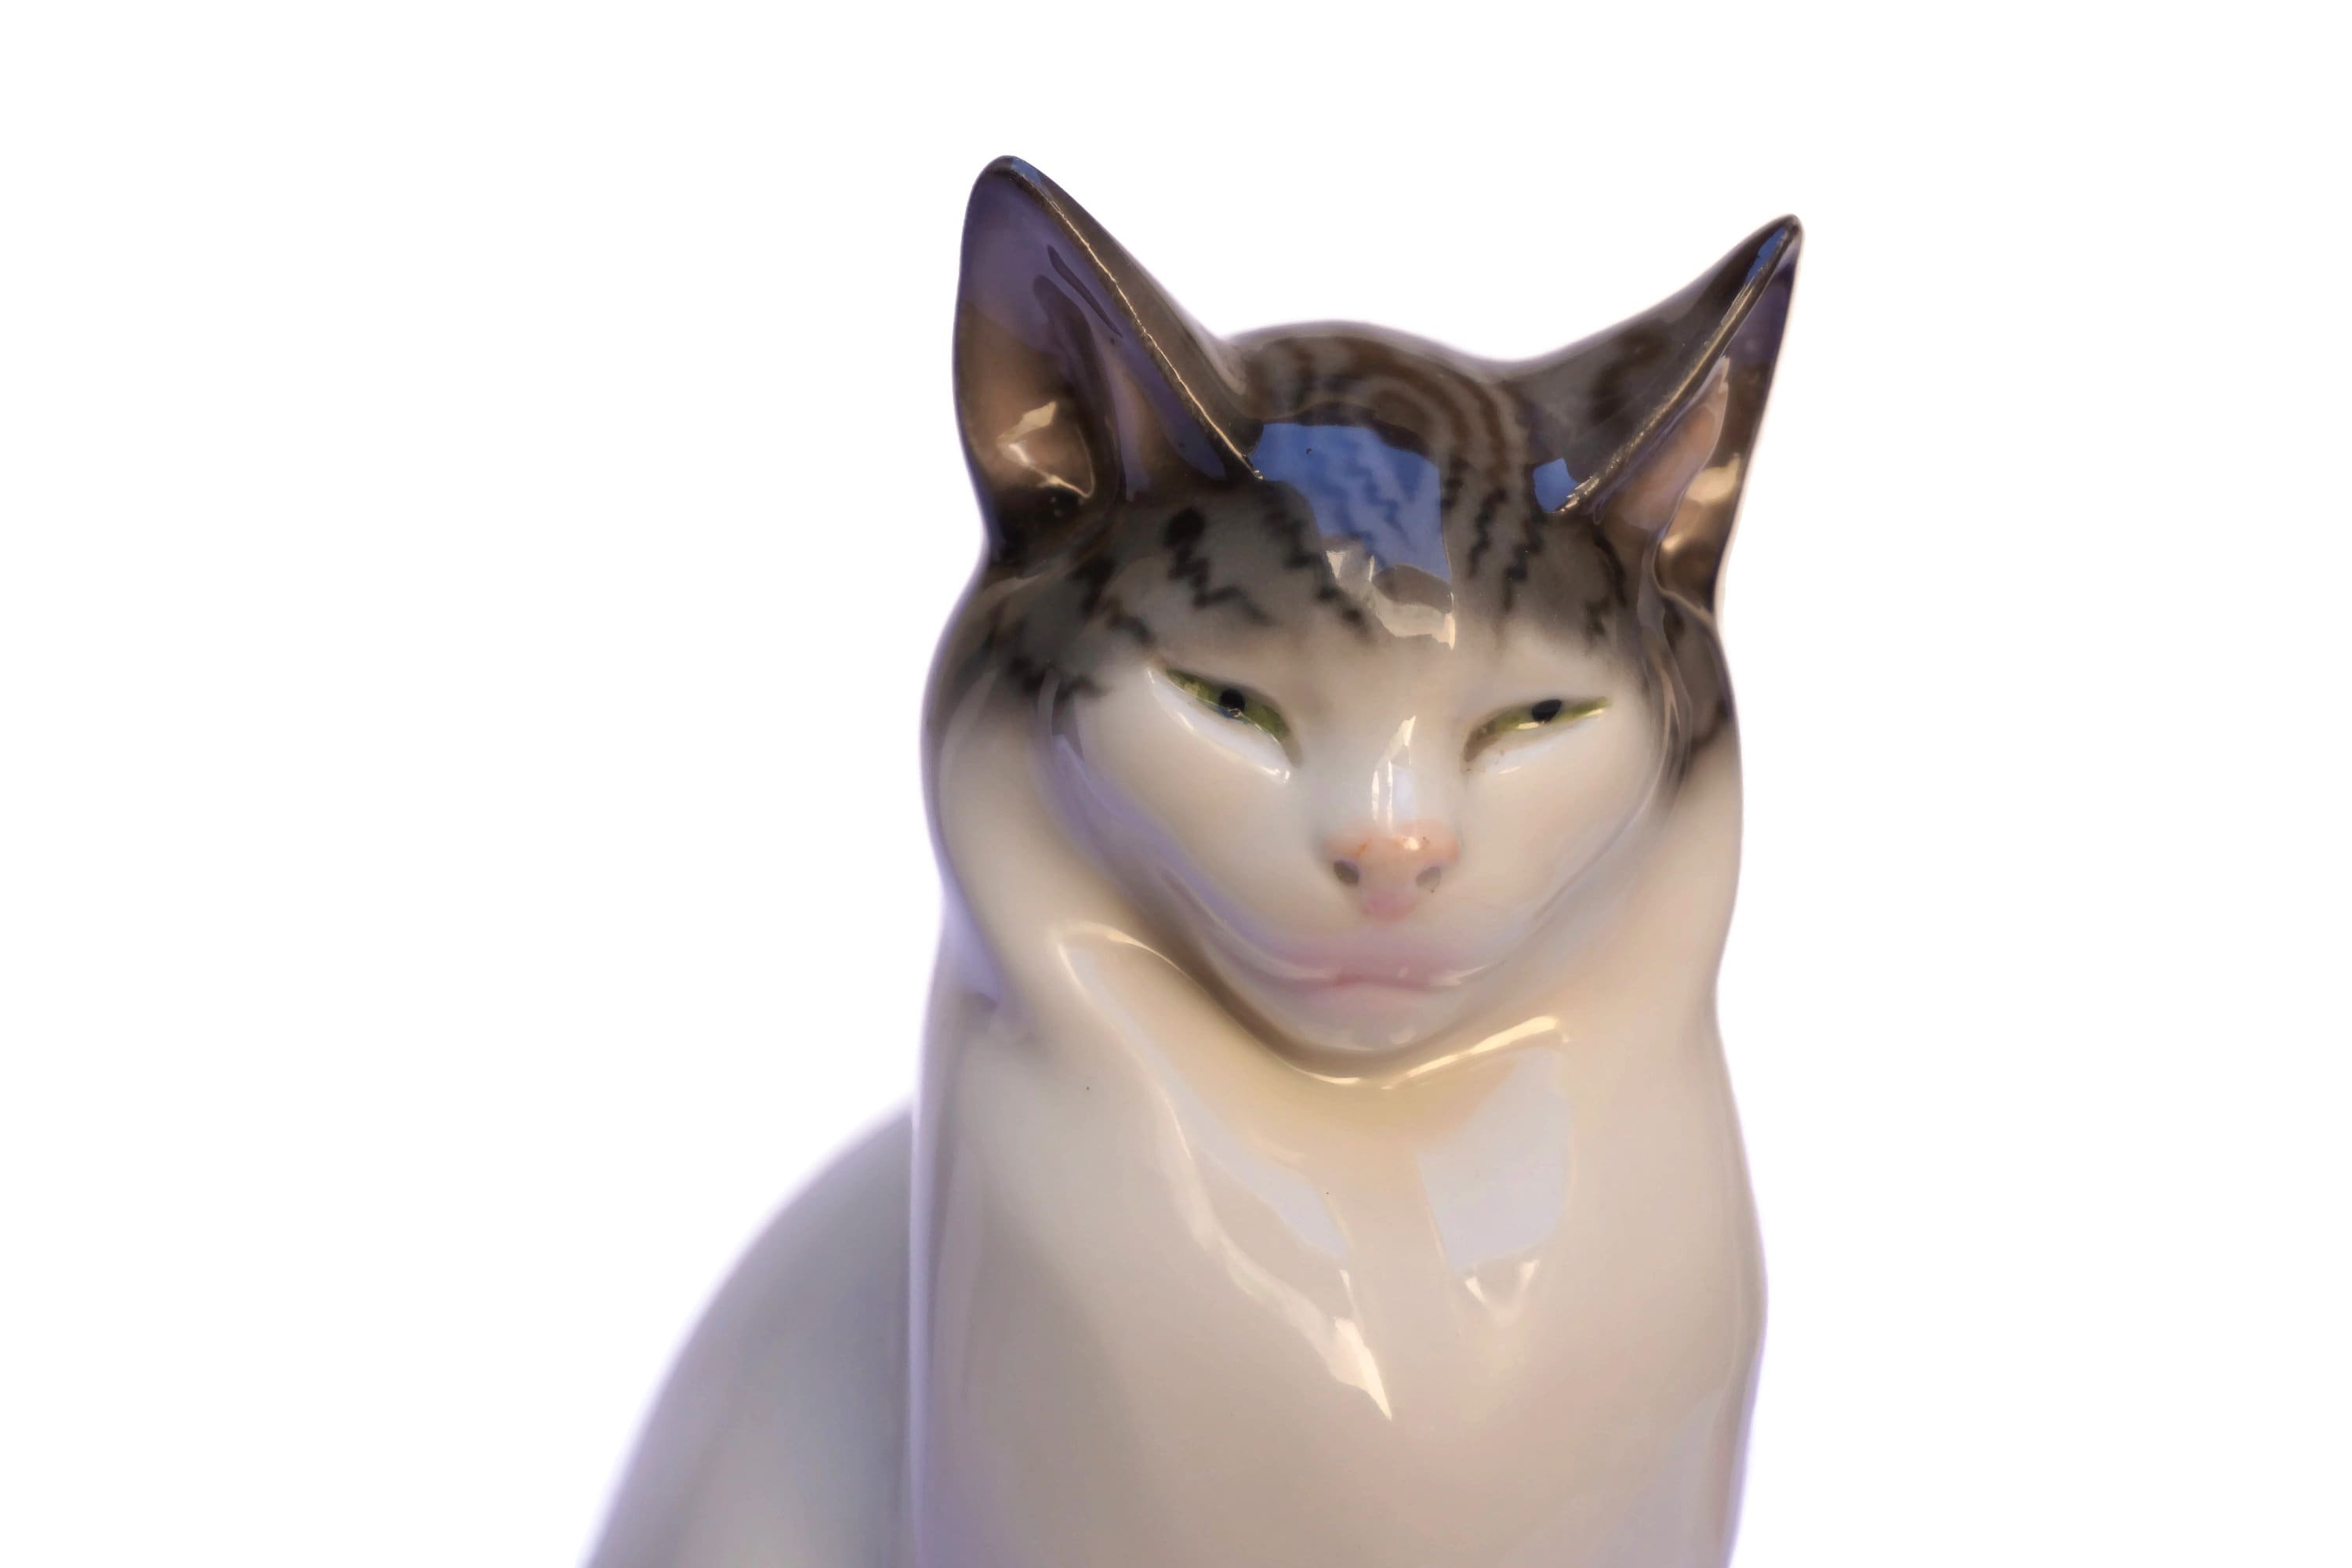 Pfeffer Gotha Porcelain Cat Figurine, Cat Lover Gift